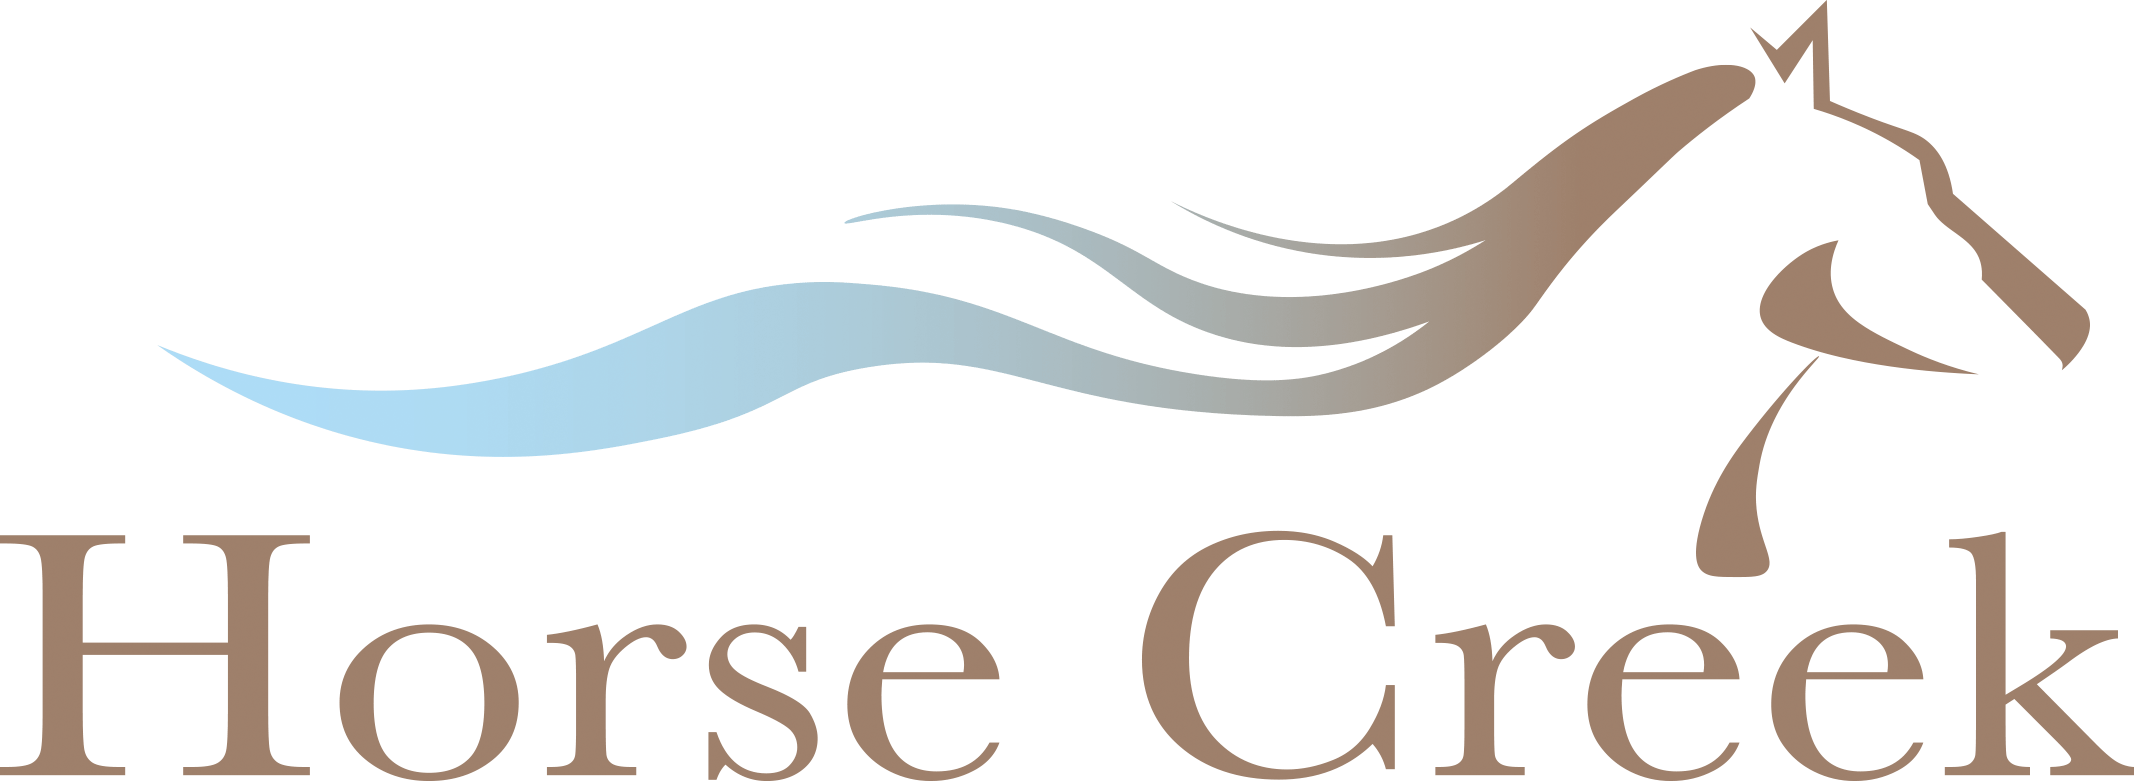 horse-creek-logo